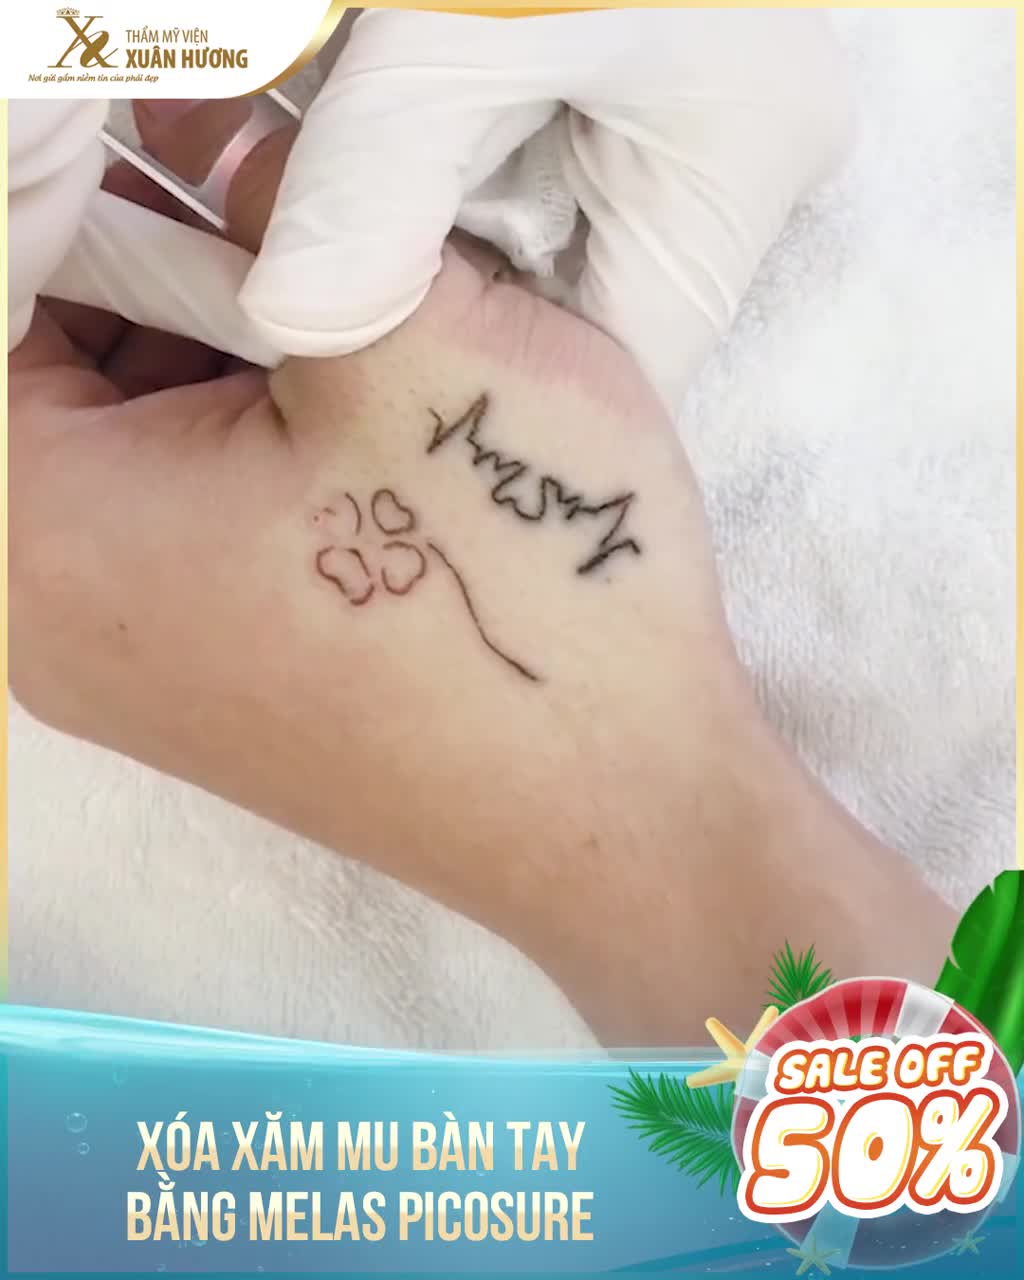 Xăm 1 câu trích dẫn  Cường Tattoo Salon Dia chi xam hinh tai Quang Ngai